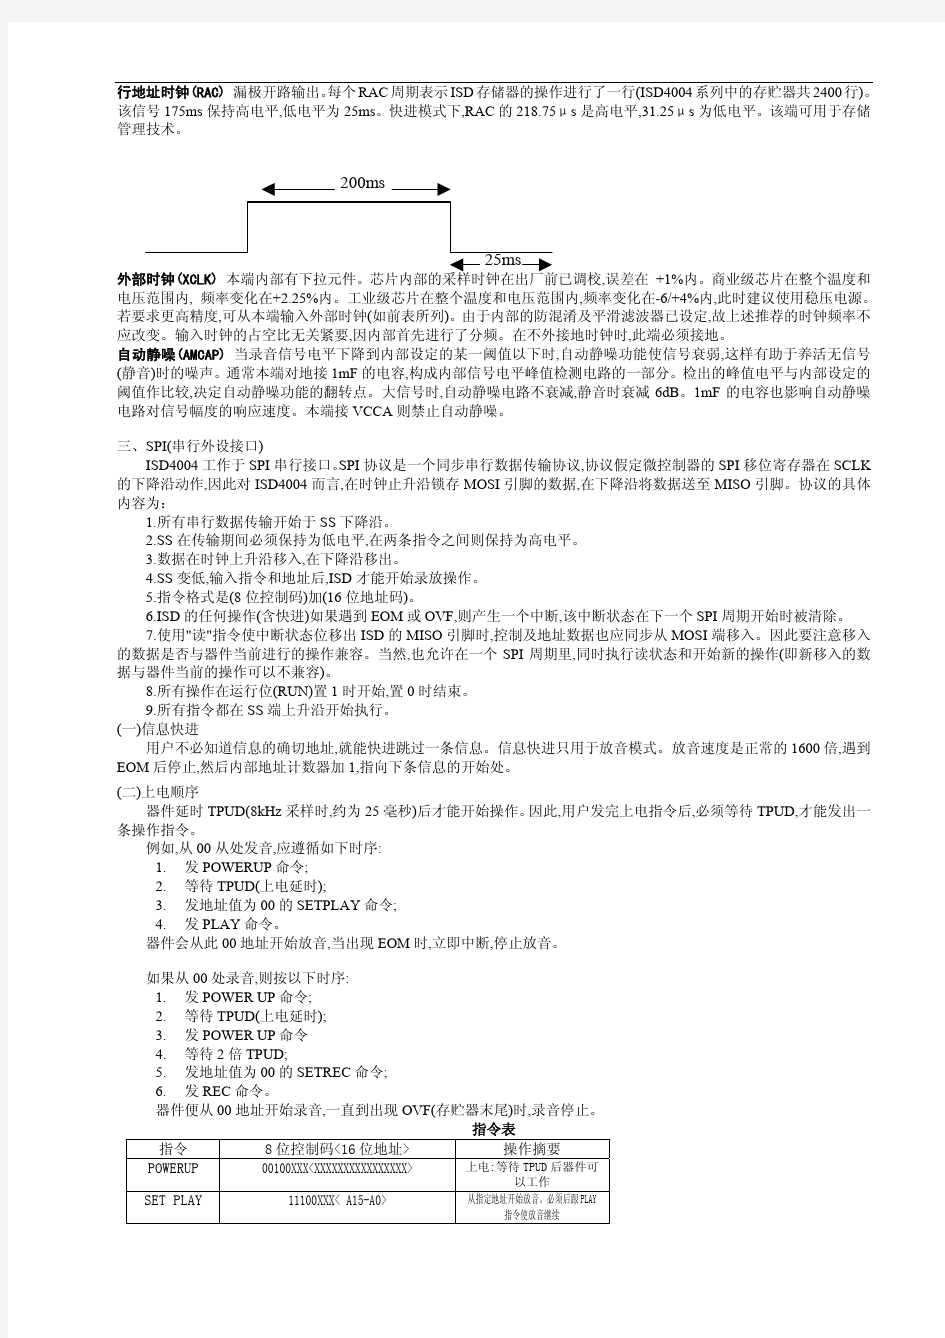 ISD4004中文资料